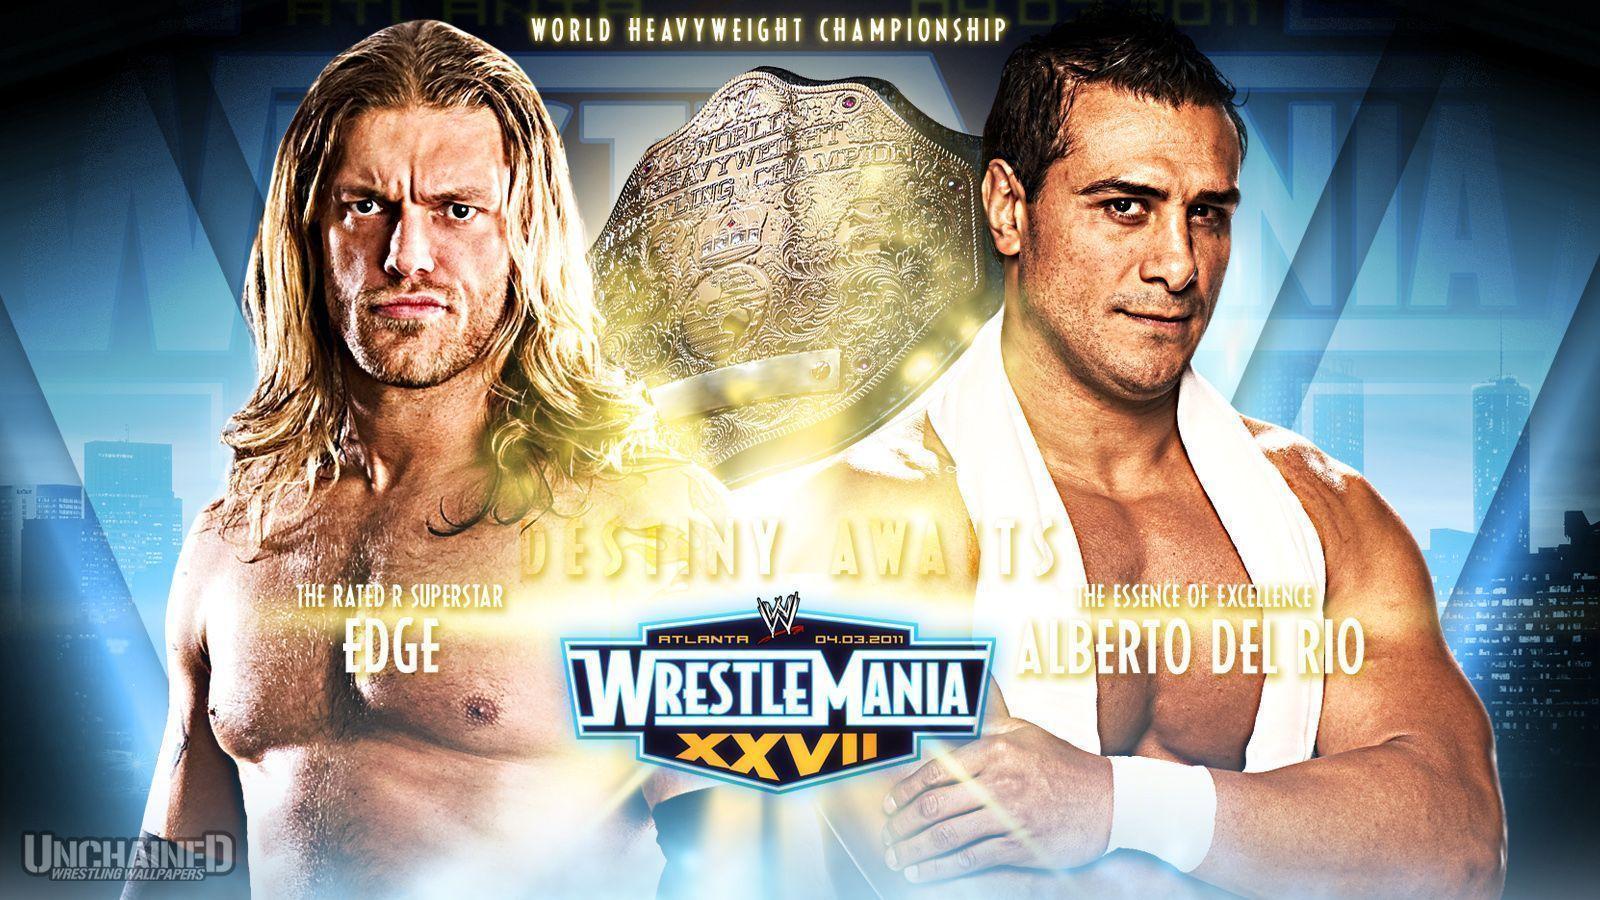 WWE WrestleMania "Edge vs Alberto Del Rio" Wallpaper Unchained